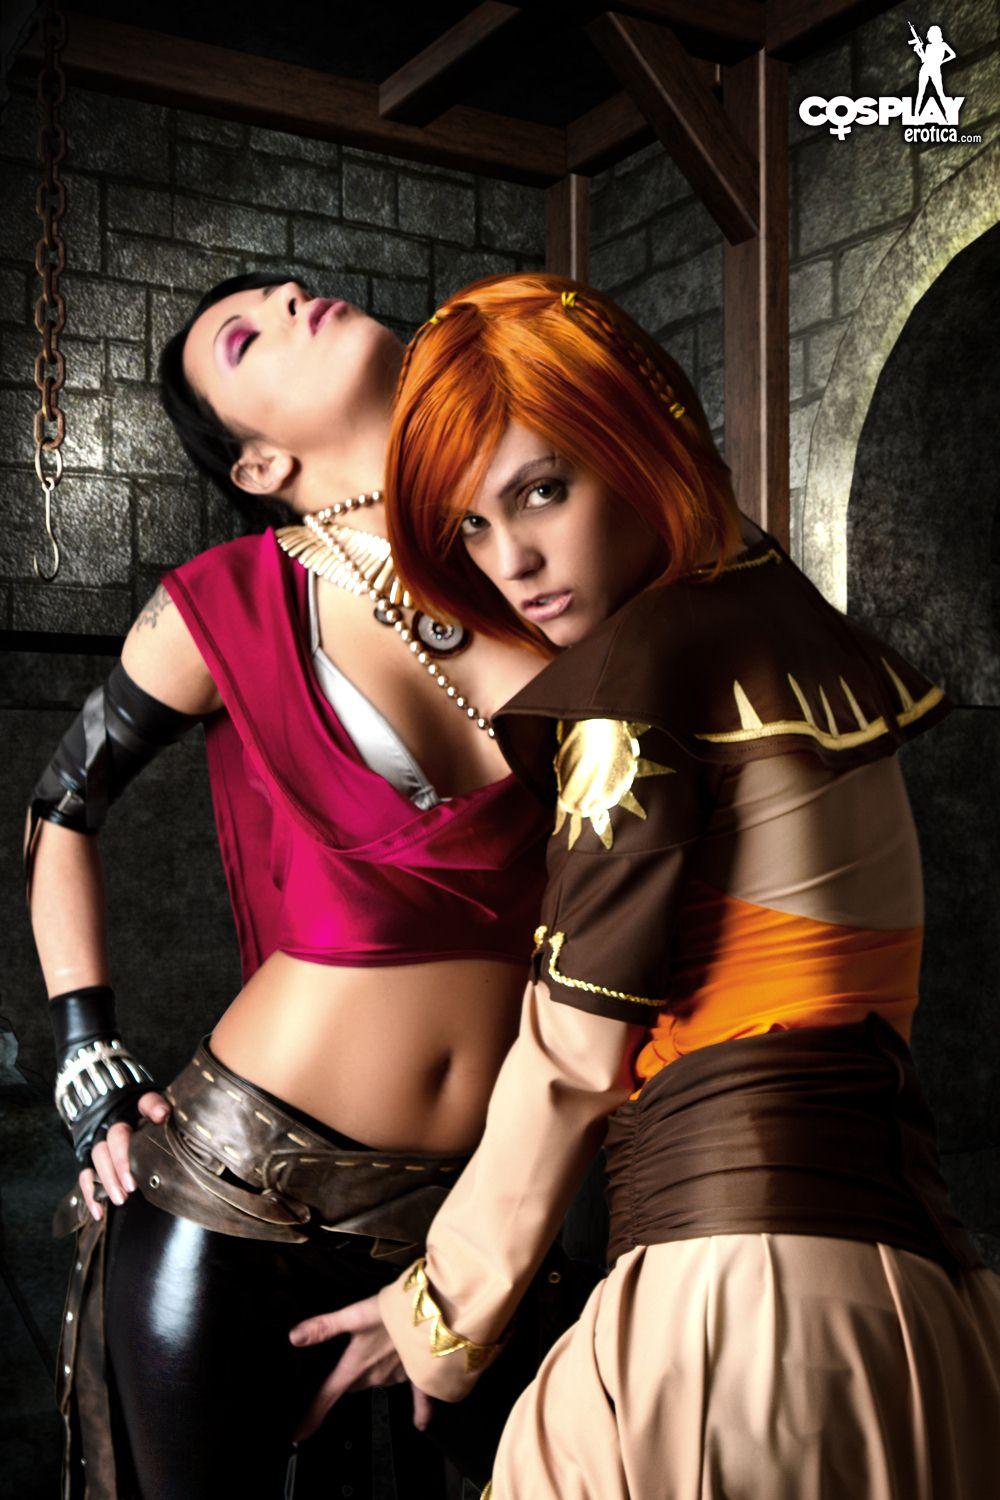 Immagini di nayma e mea facendo un caldo lesbica dragon age cosplay
 #59444503